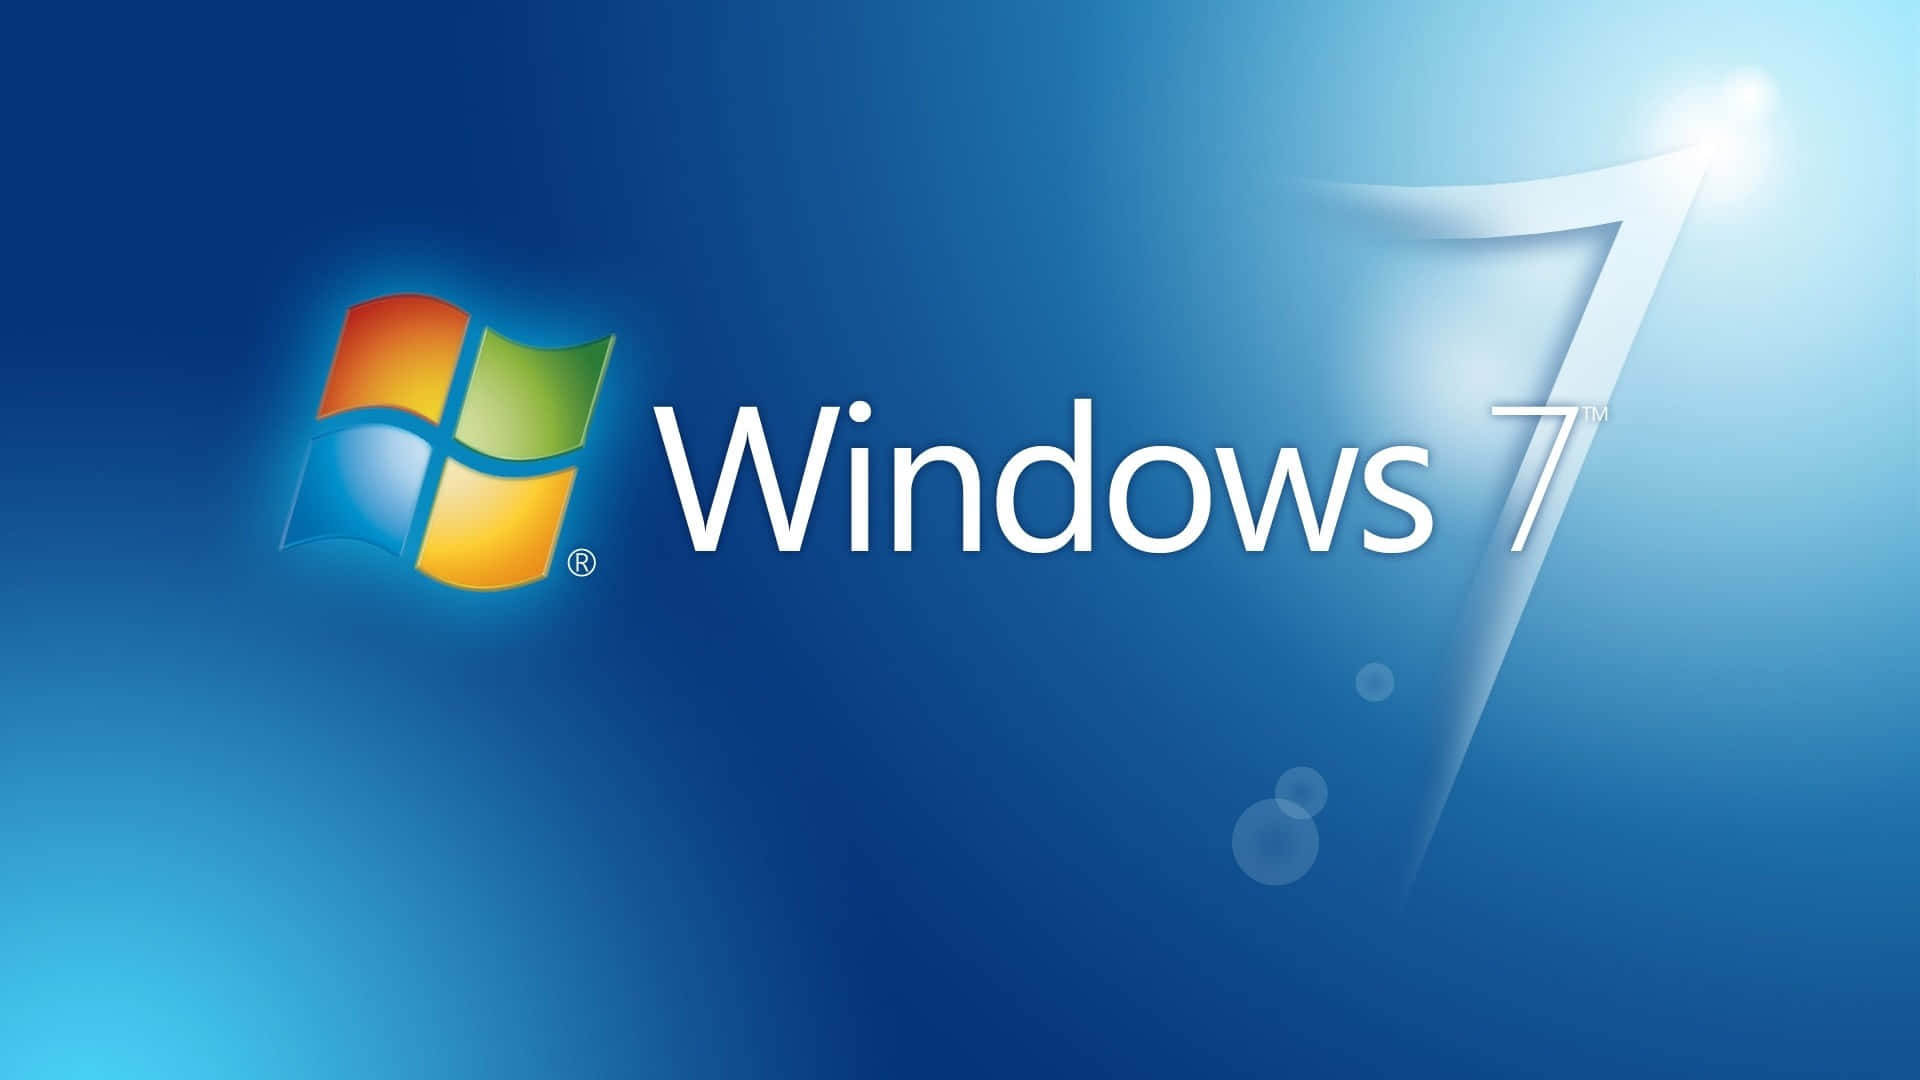 Windows7 Logo Auf Einem Blauen Hintergrund.